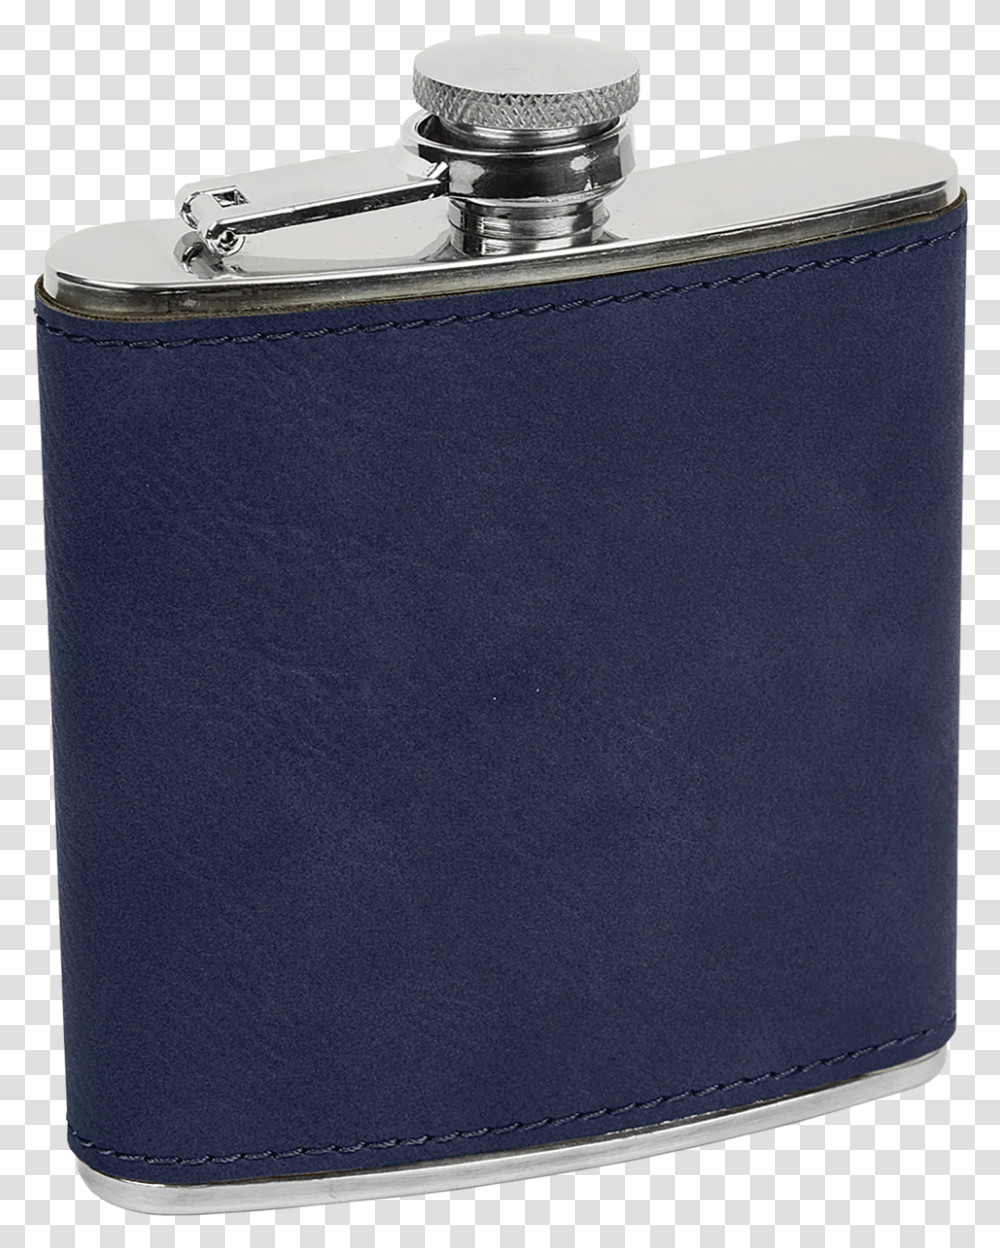 Hip Flask Blue Leather Hip Flask, Rug, Bag, Accessories, File Binder Transparent Png